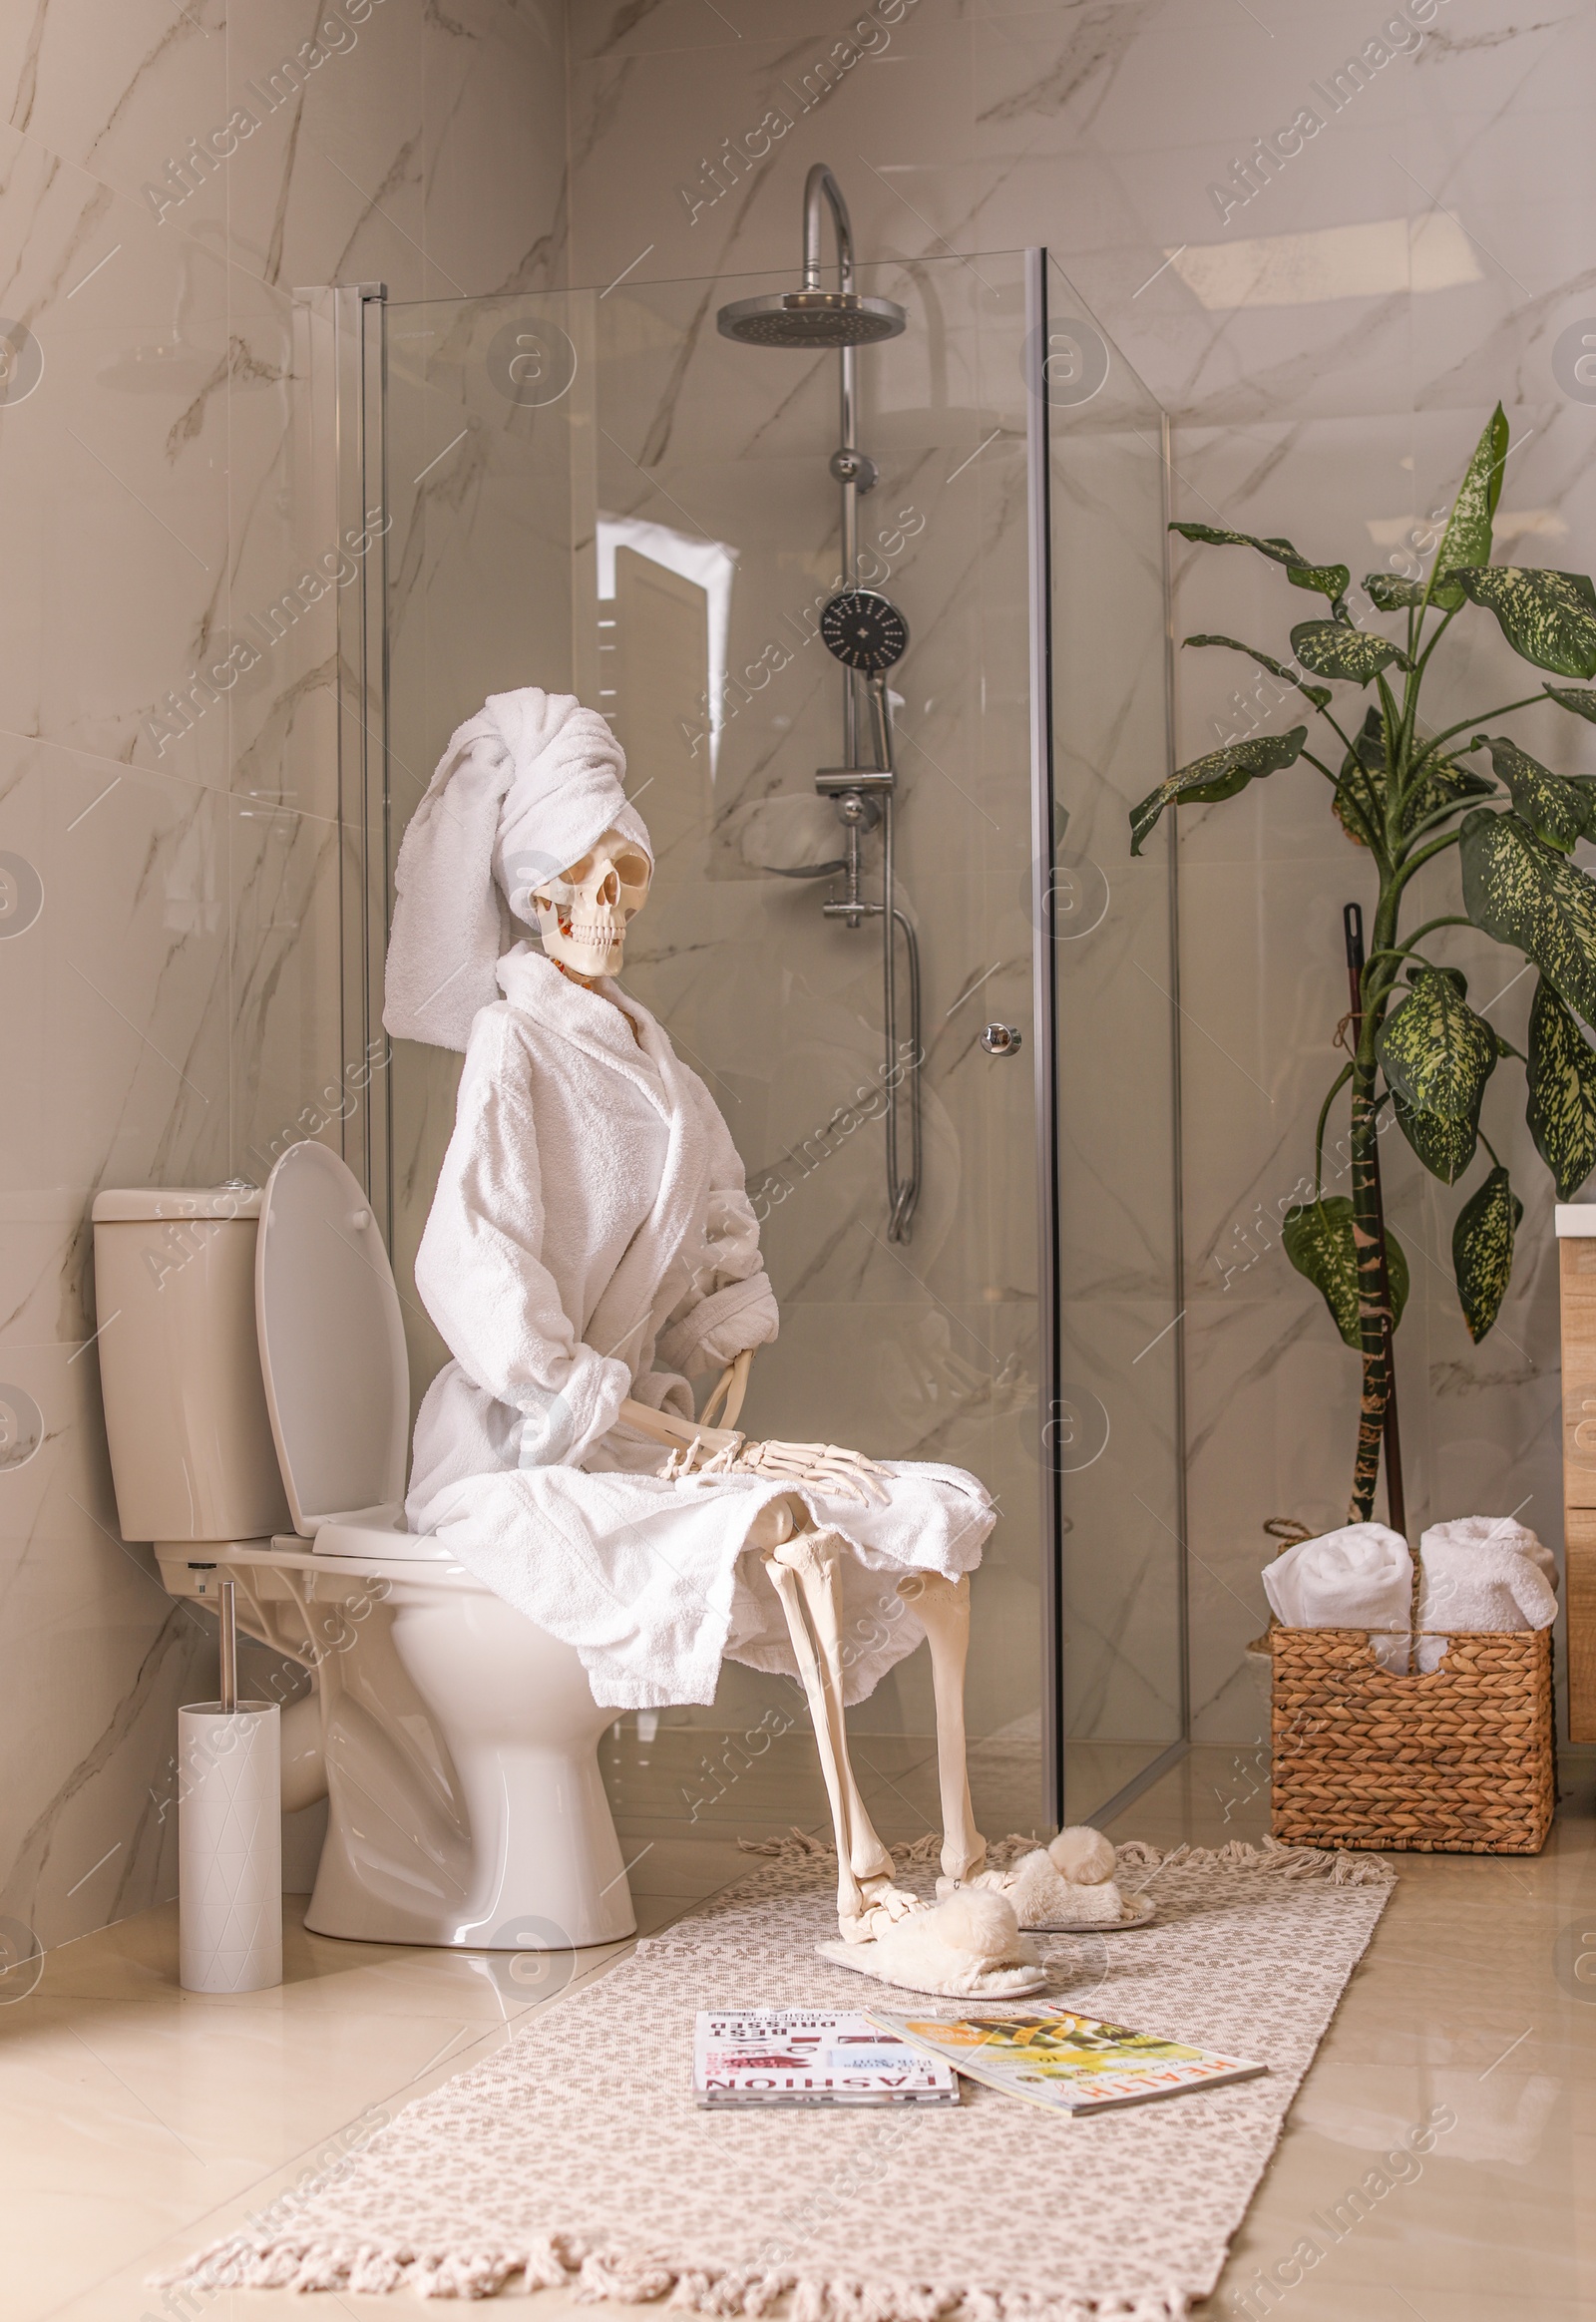 Photo of Skeleton in bathrobe sitting on toilet bowl